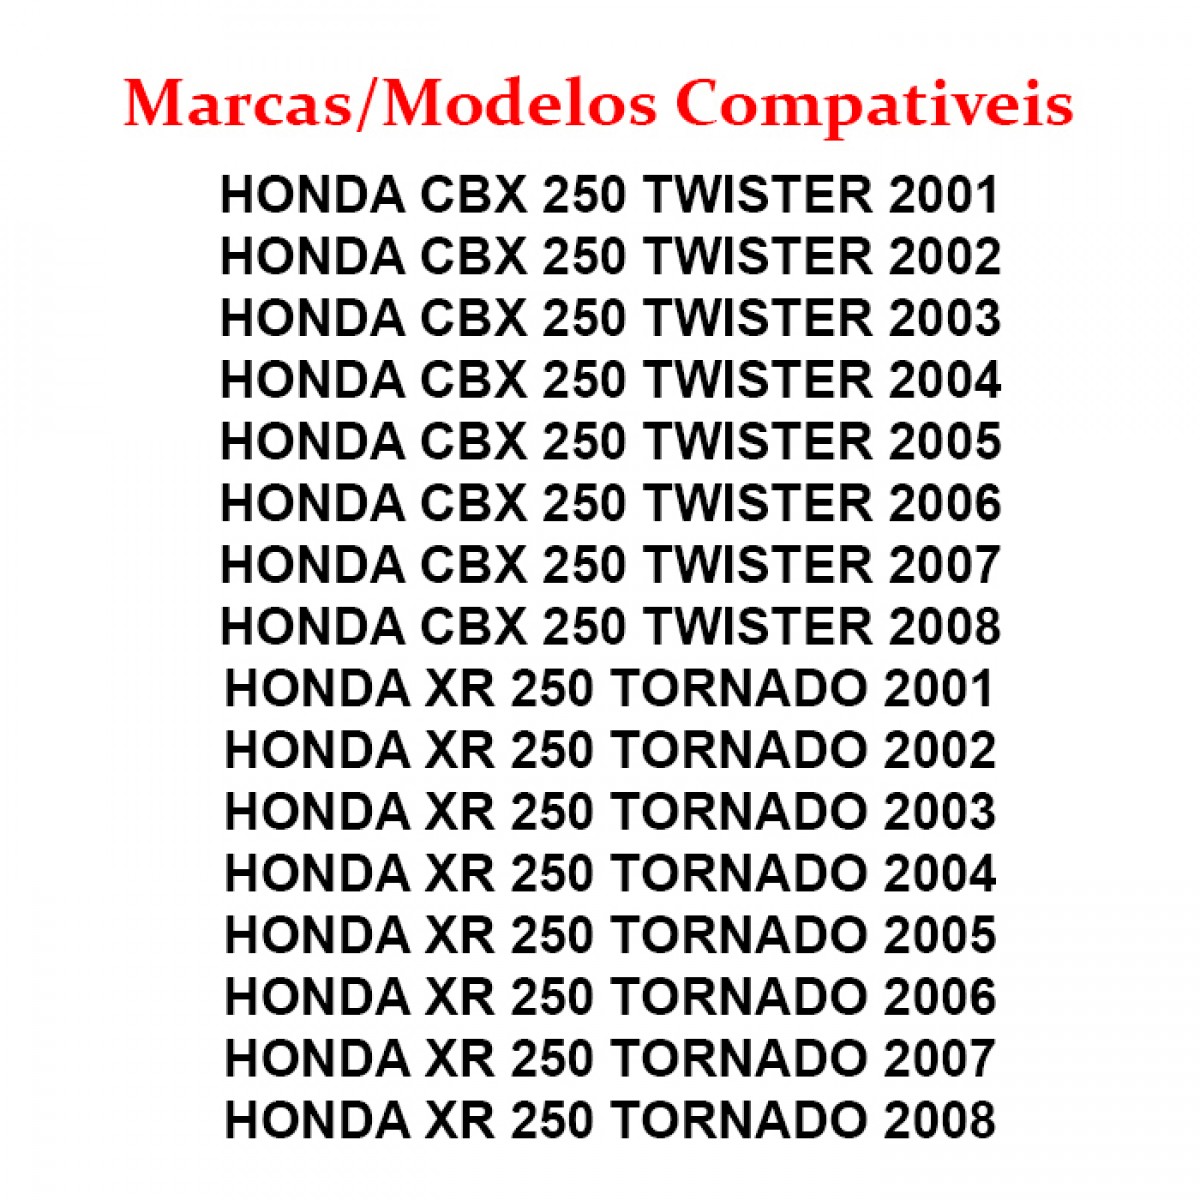 Placa APW9E87 - HONDA CBX 250 TWISTER 2008 - Placa Fipe